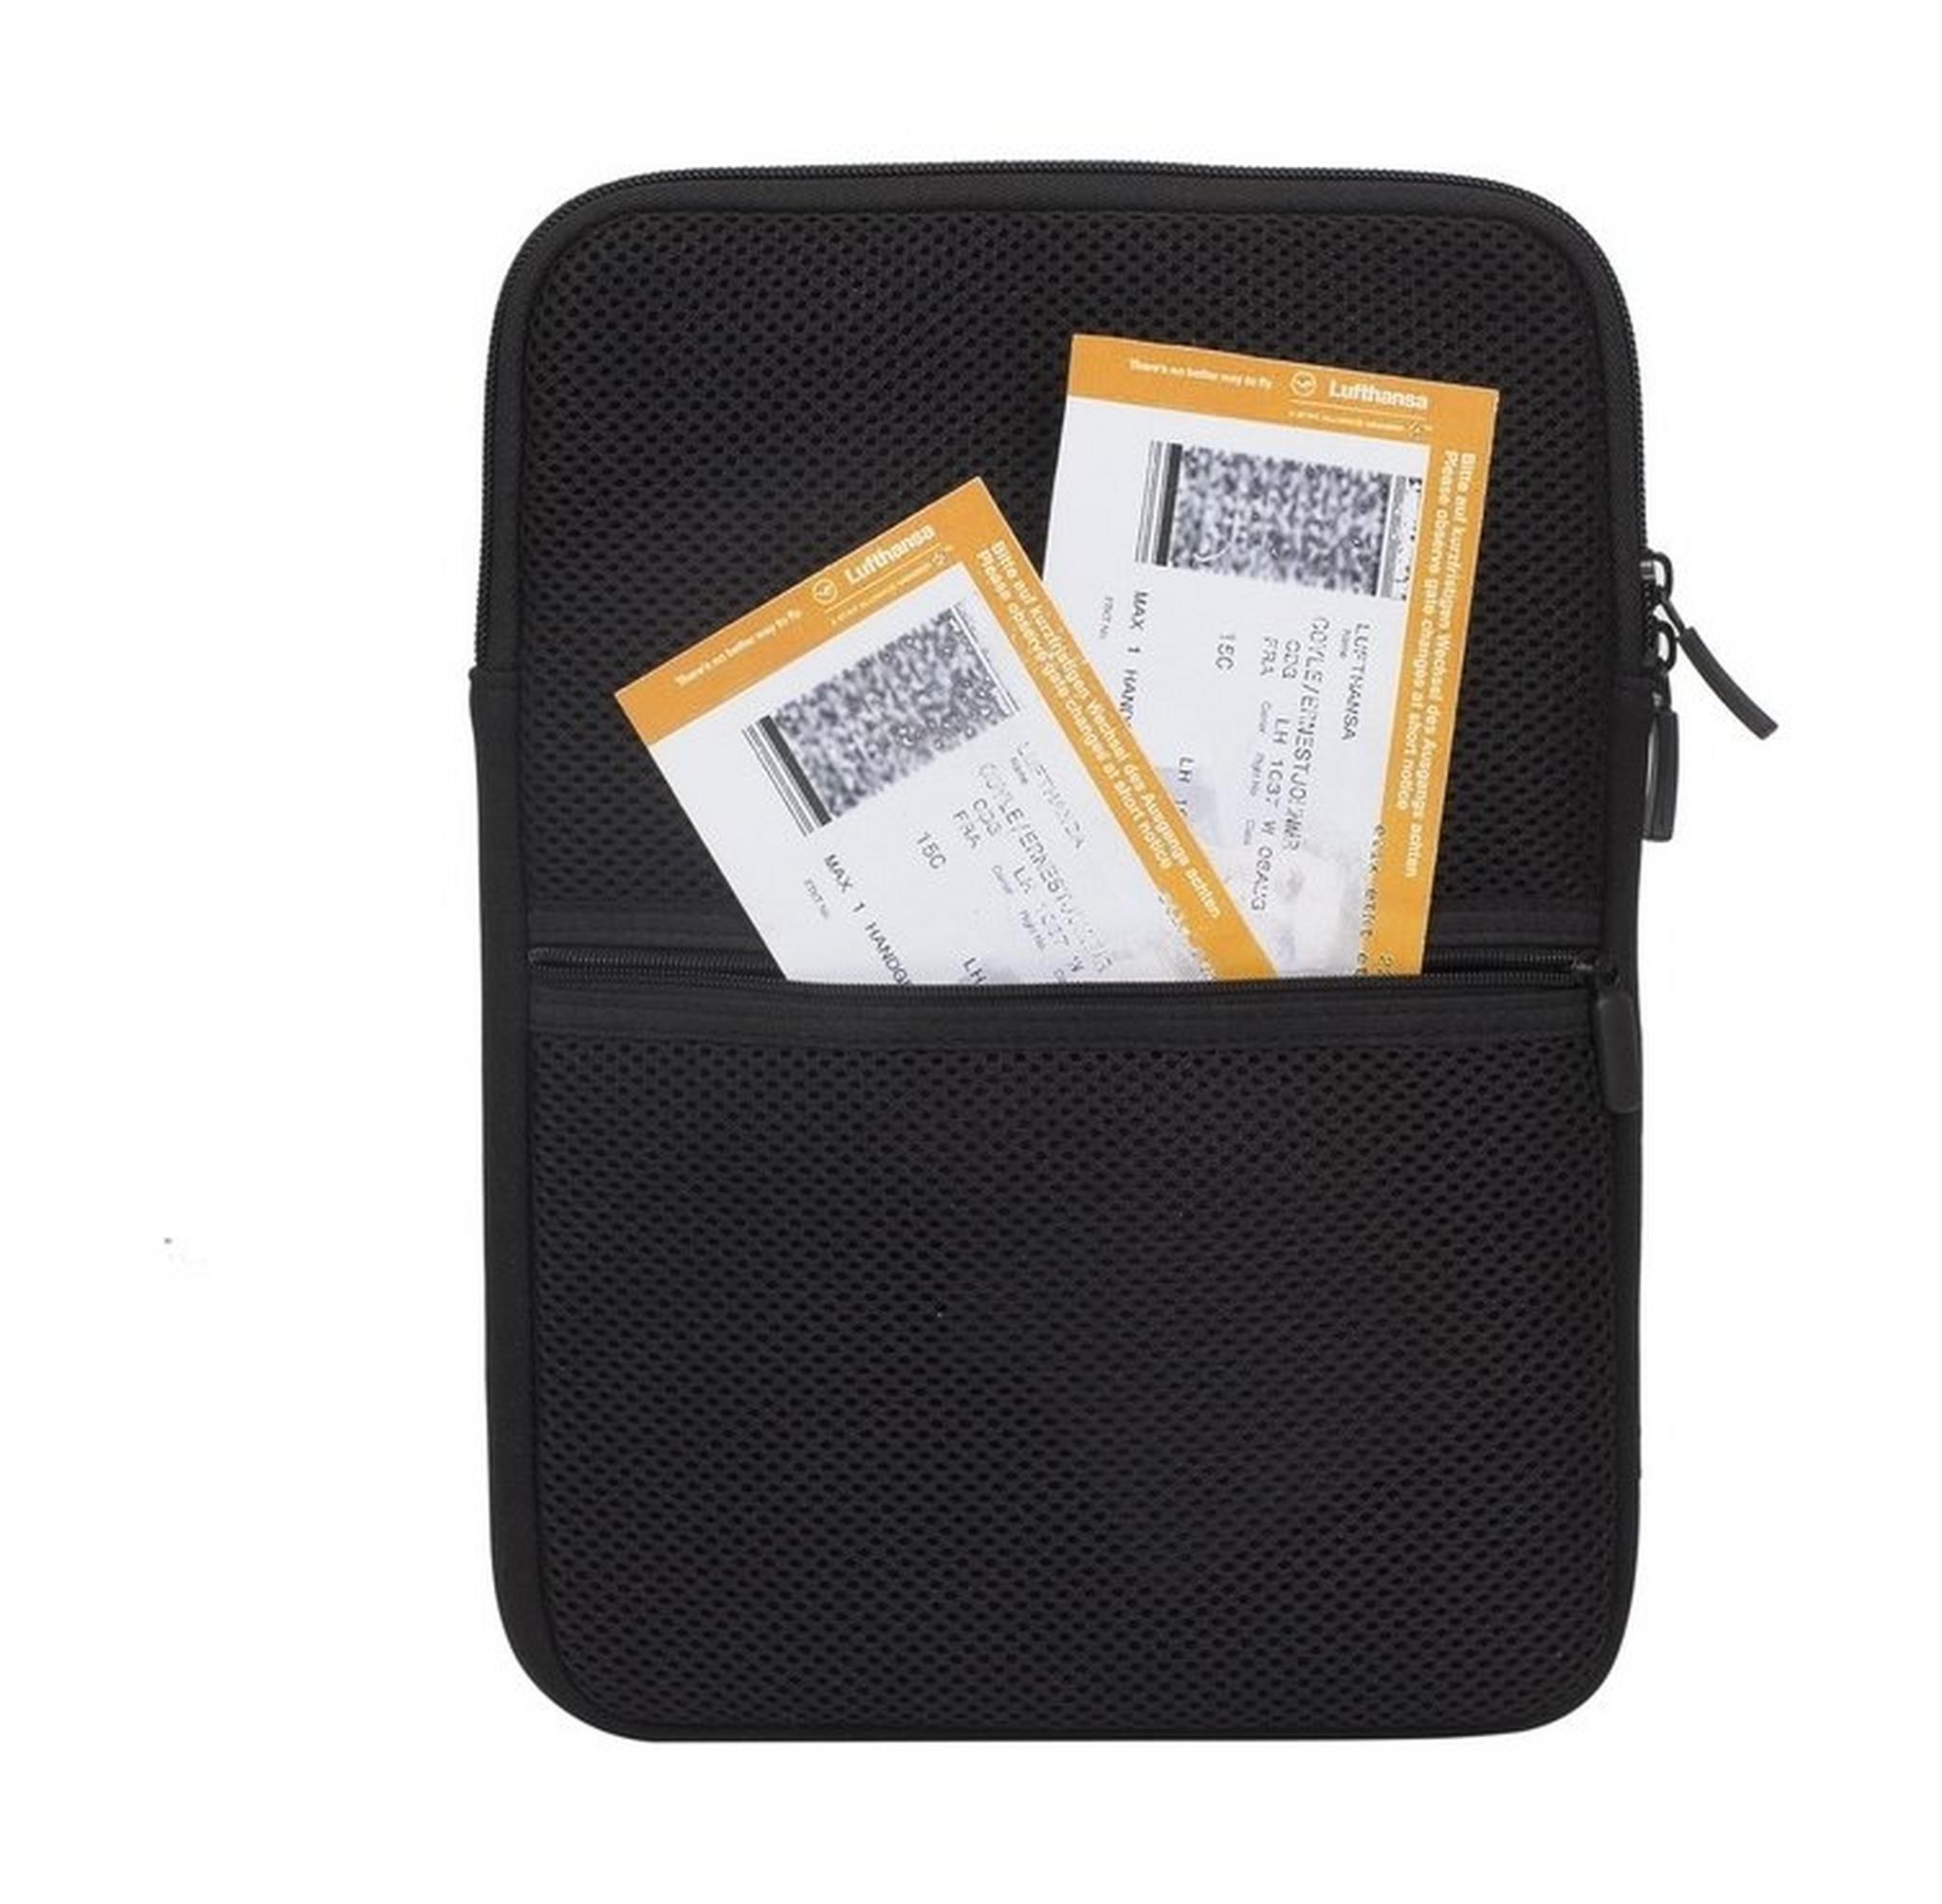 حقيبة سفر لتنظيم وحفظ الملحقات والادوات مقاس ١٠ بوصة من ريفا 5617 - أسود